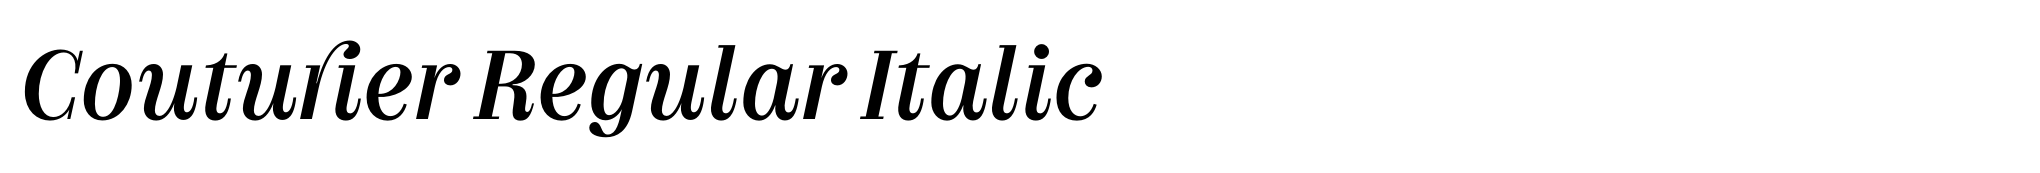 Couturier Regular Italic image